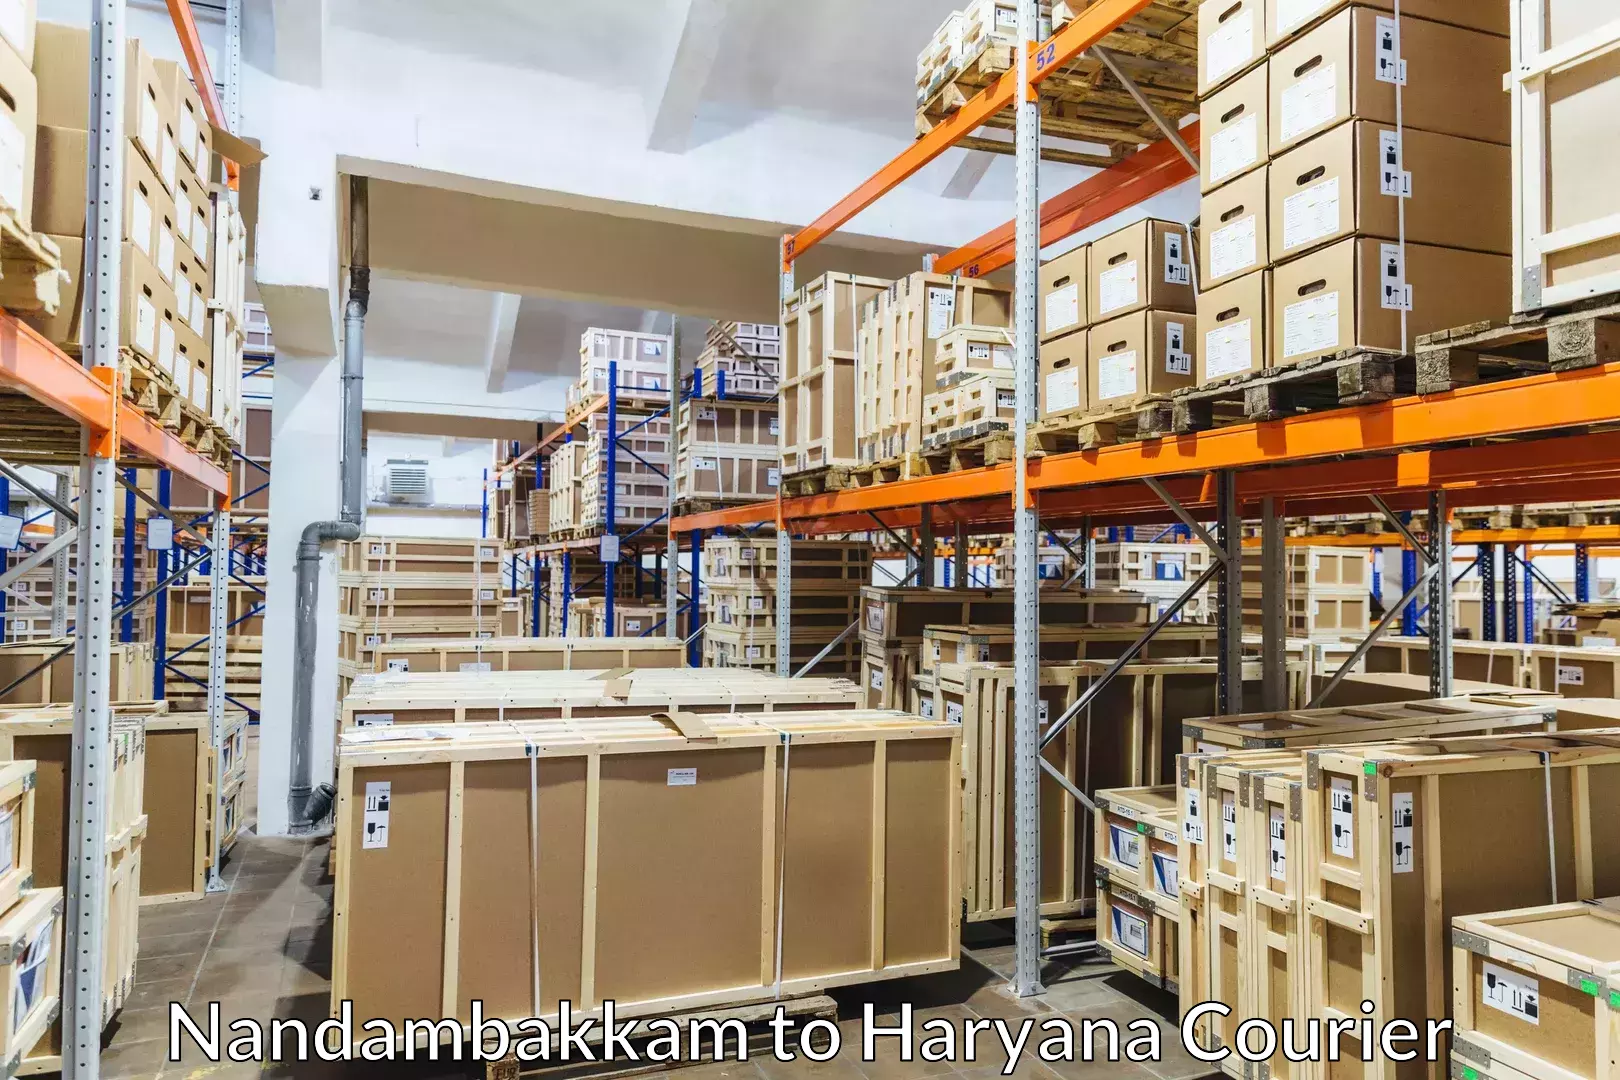 Luggage delivery operations Nandambakkam to Haryana